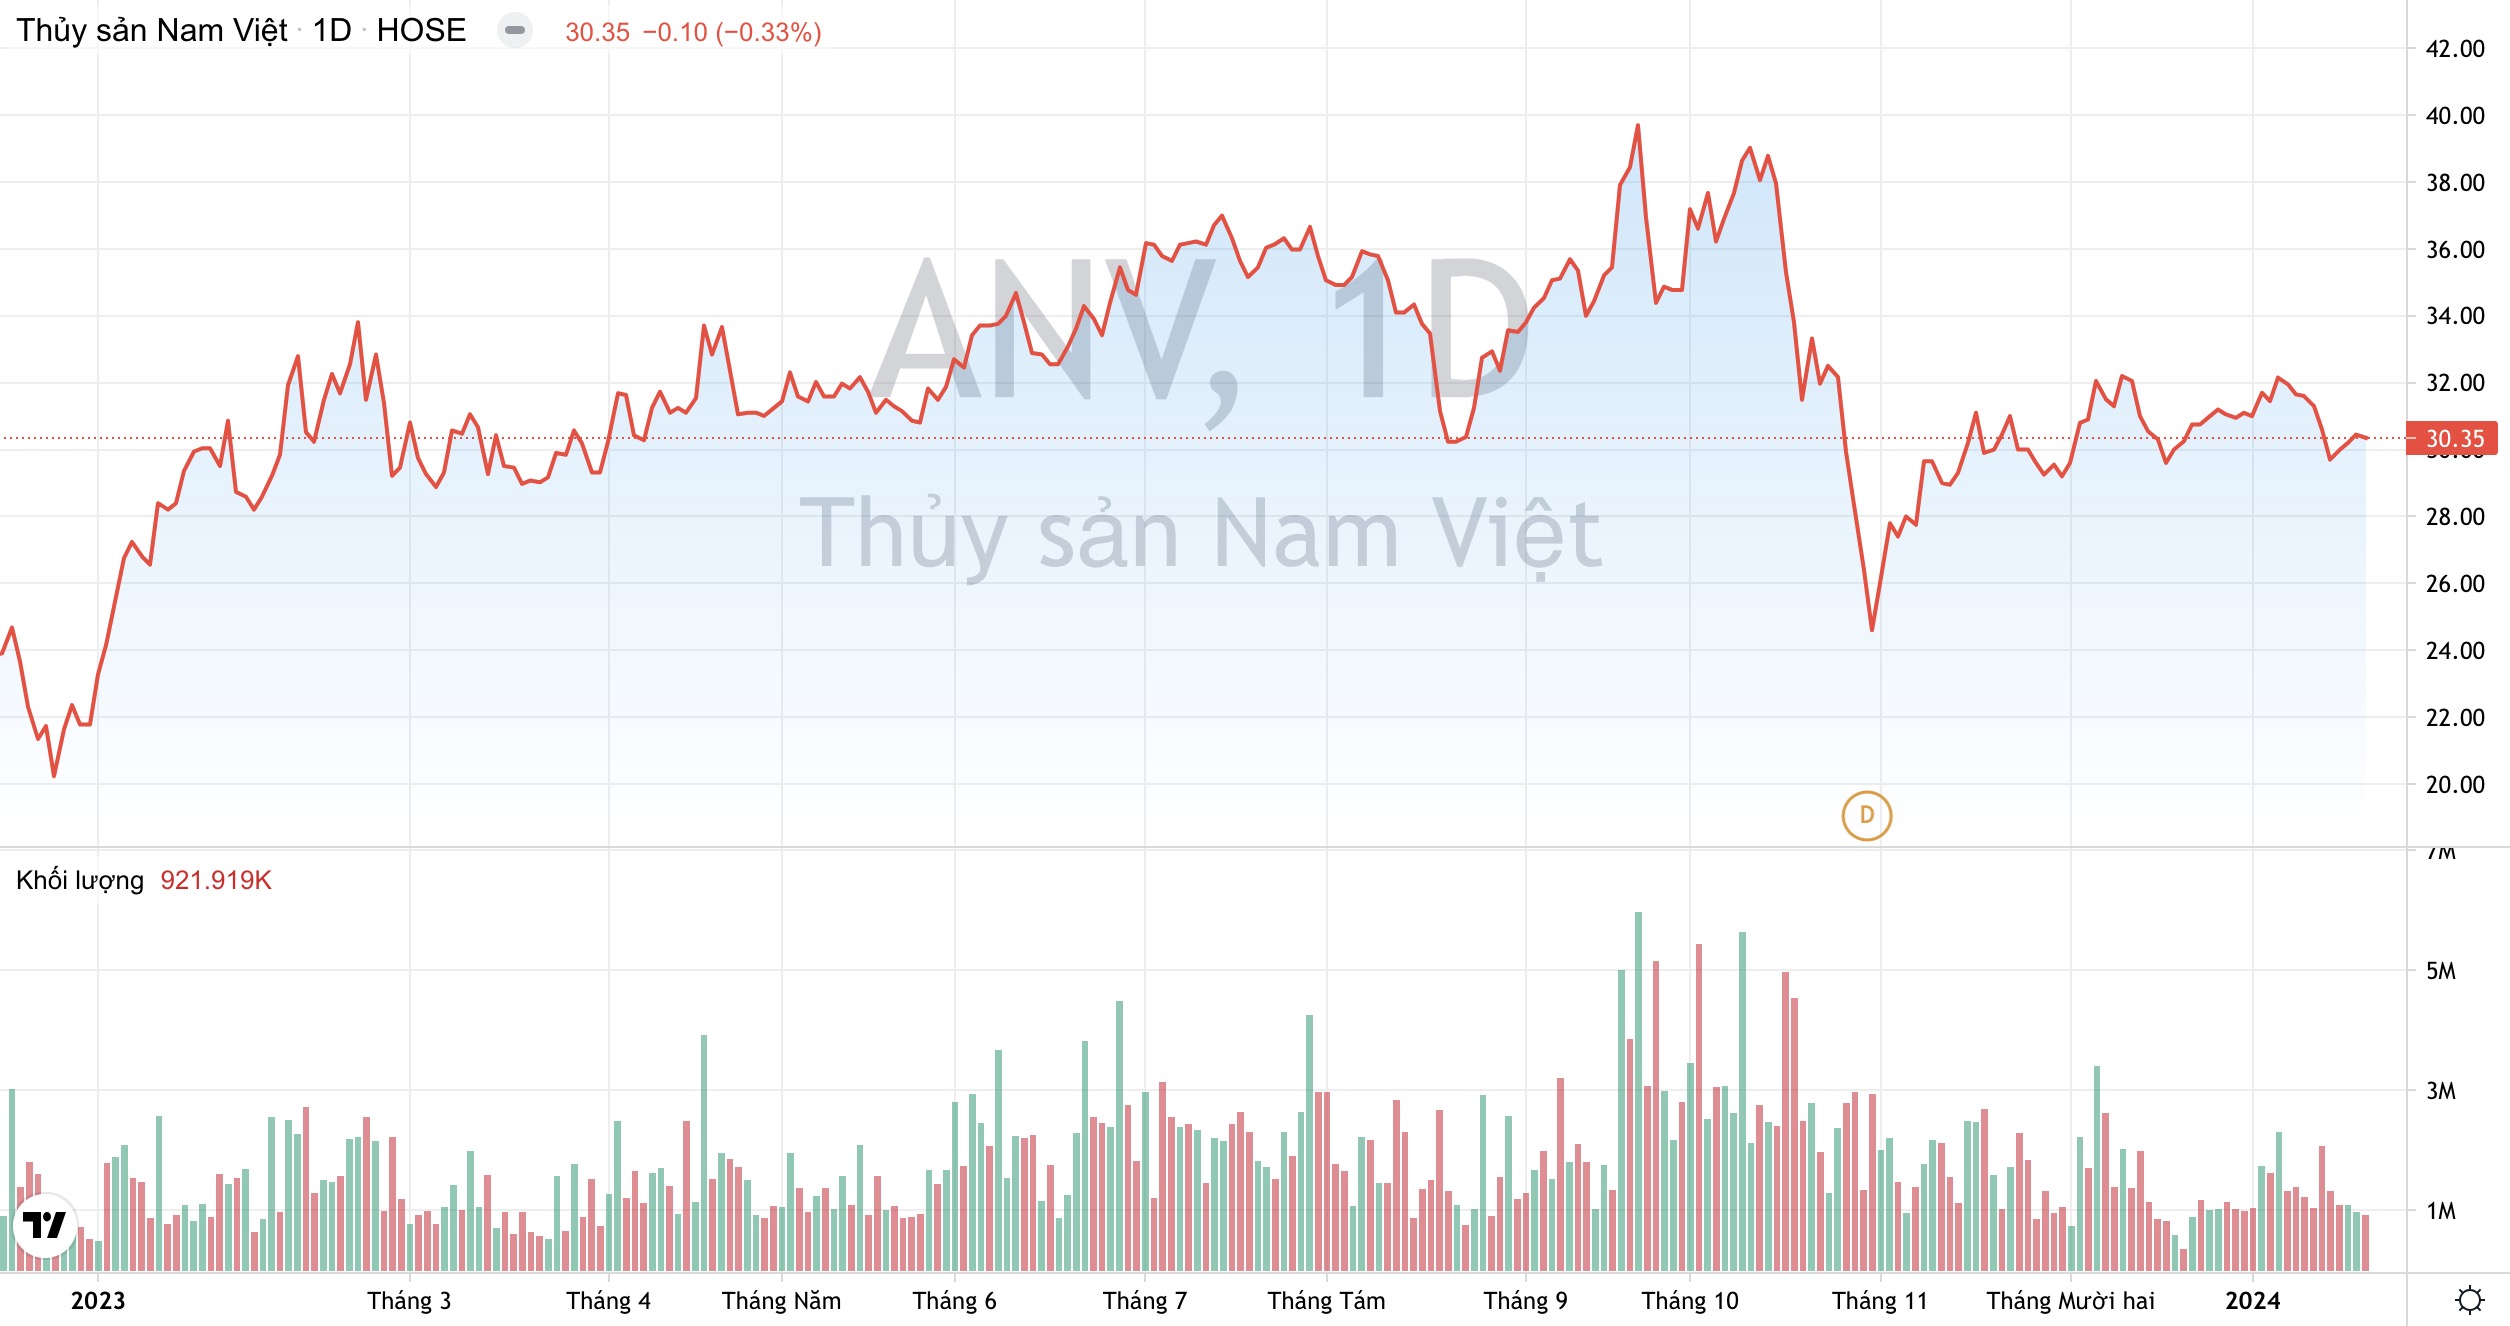 Lợi nhuận năm nay của Thuỷ sản Nam Việt (ANV) có thể tăng 150% nhờ thị trường Trung Quốc